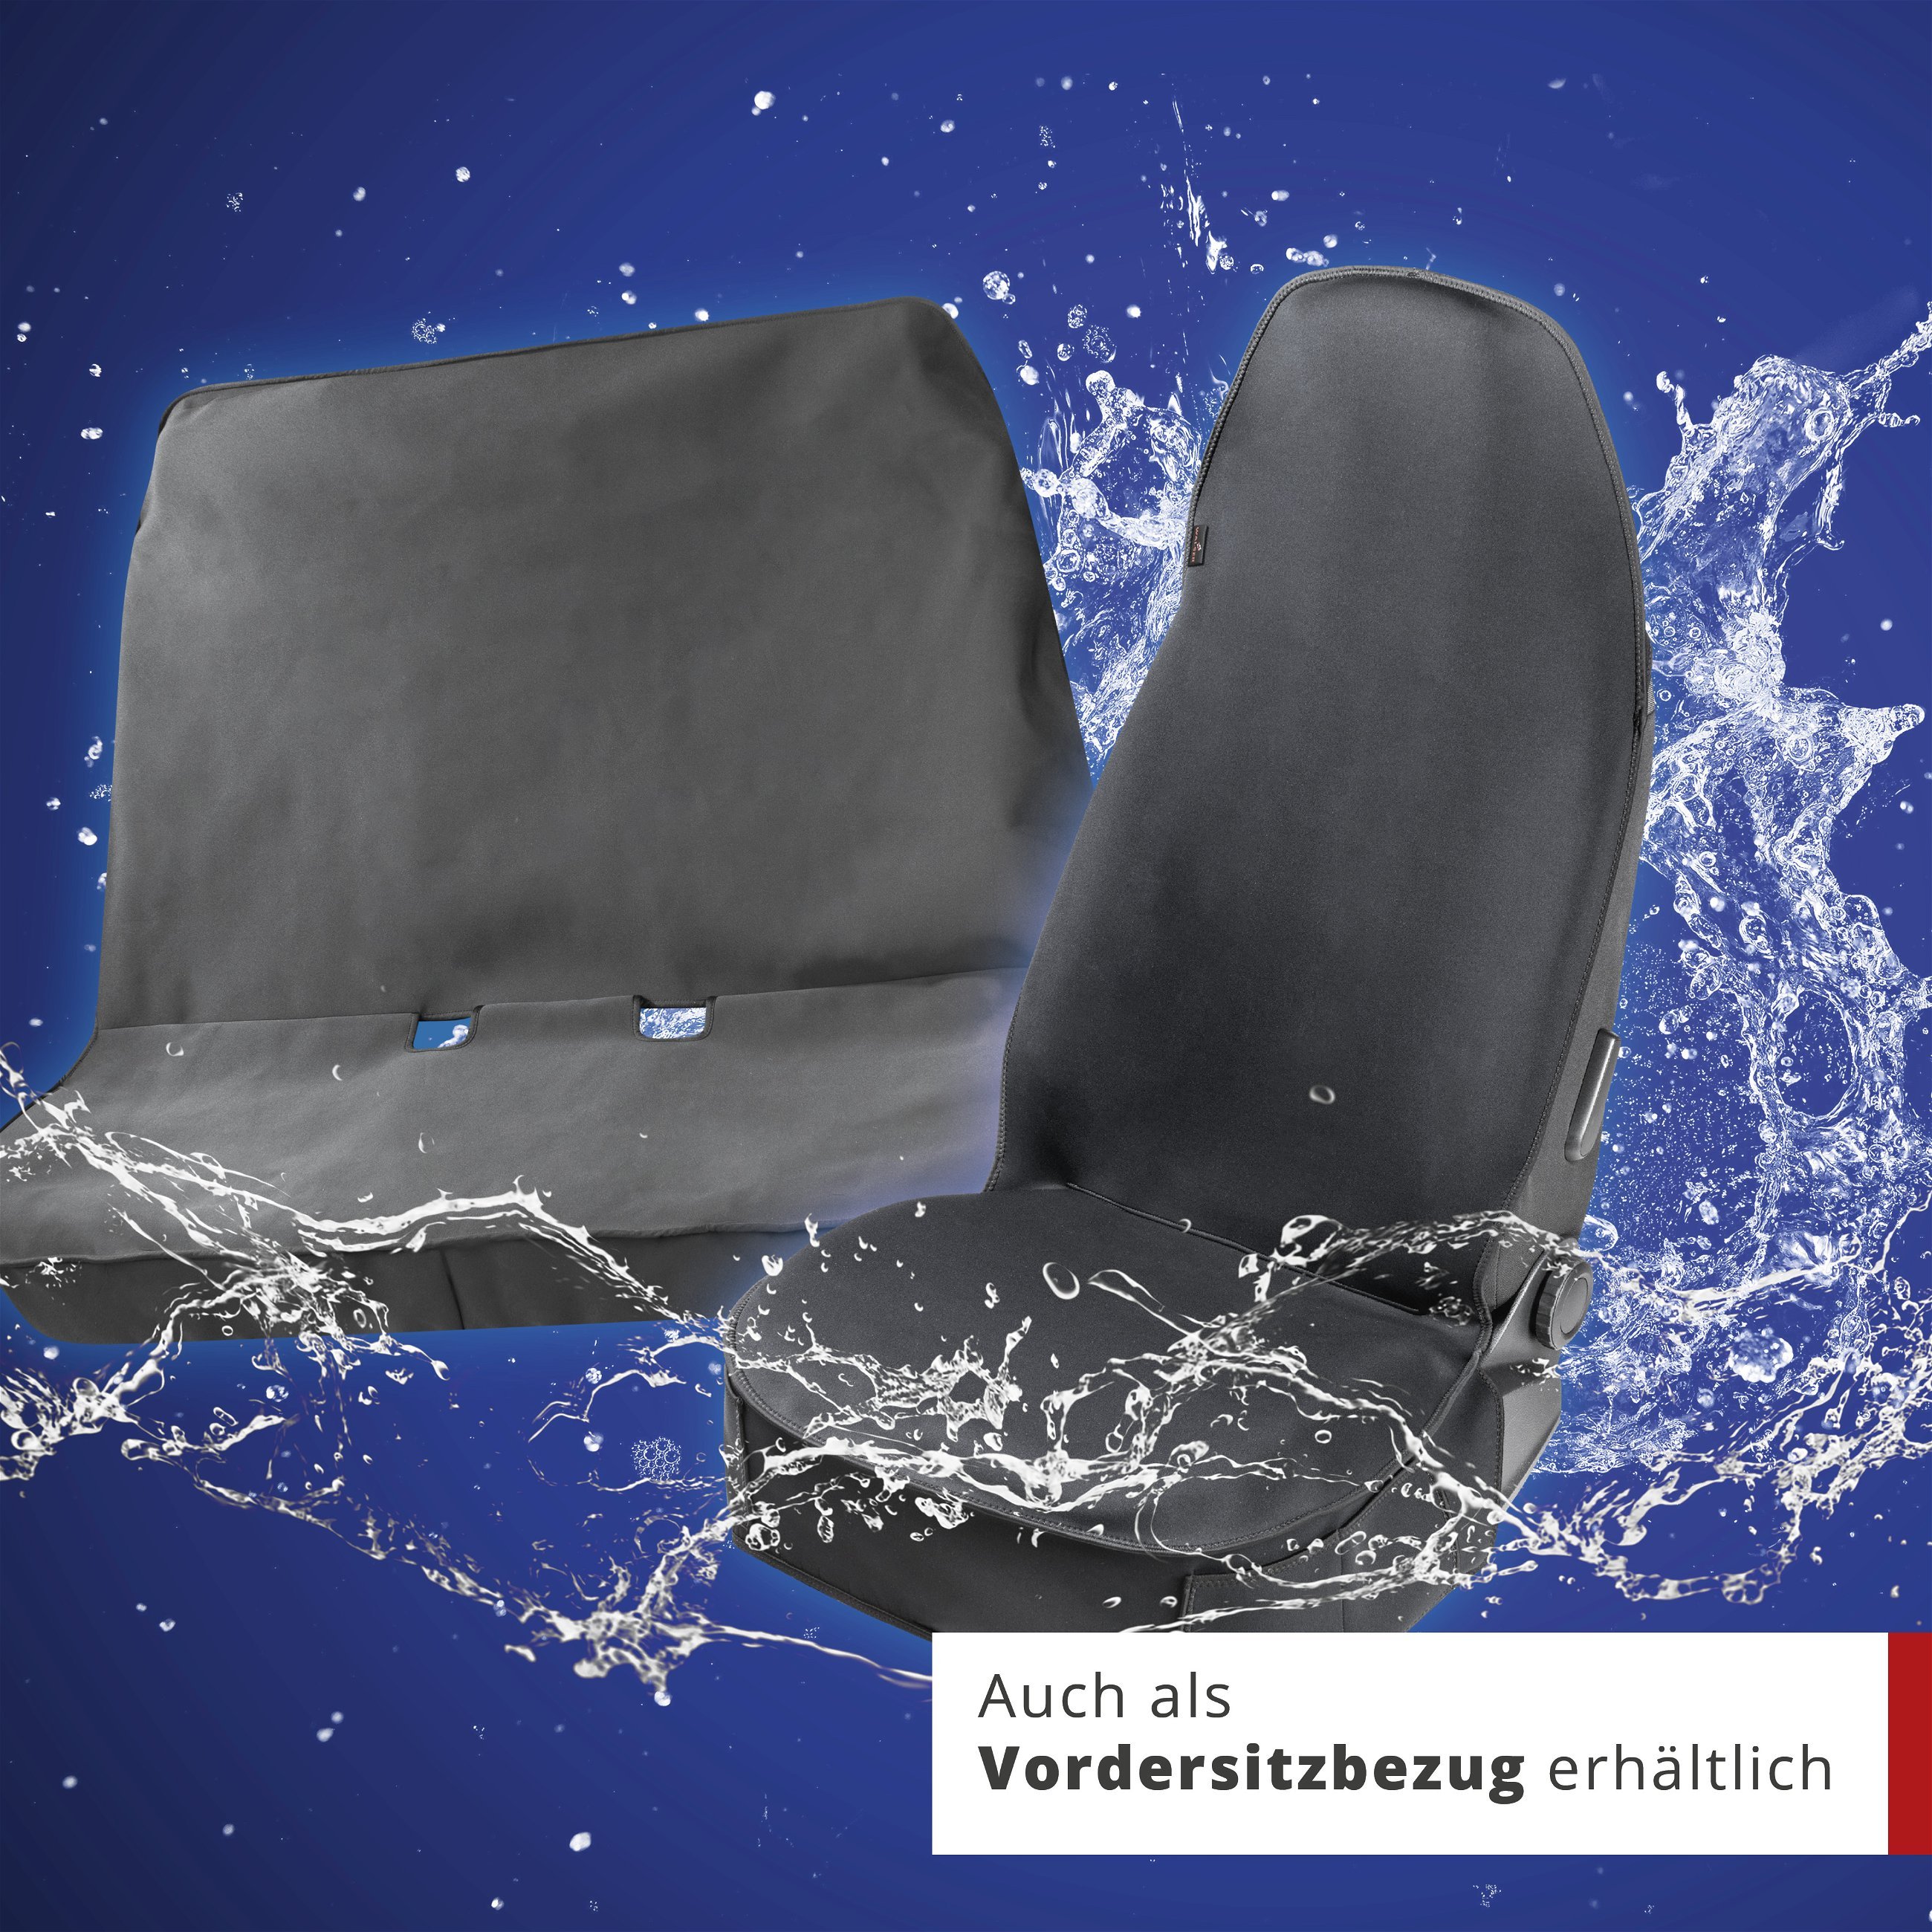 PKW Sitzauflage Neopren, Auto-Sitzschoner Rücksitzbank wasserdicht, robuste Universal Schutzauflage und Schutzunterlage PKW/LKW